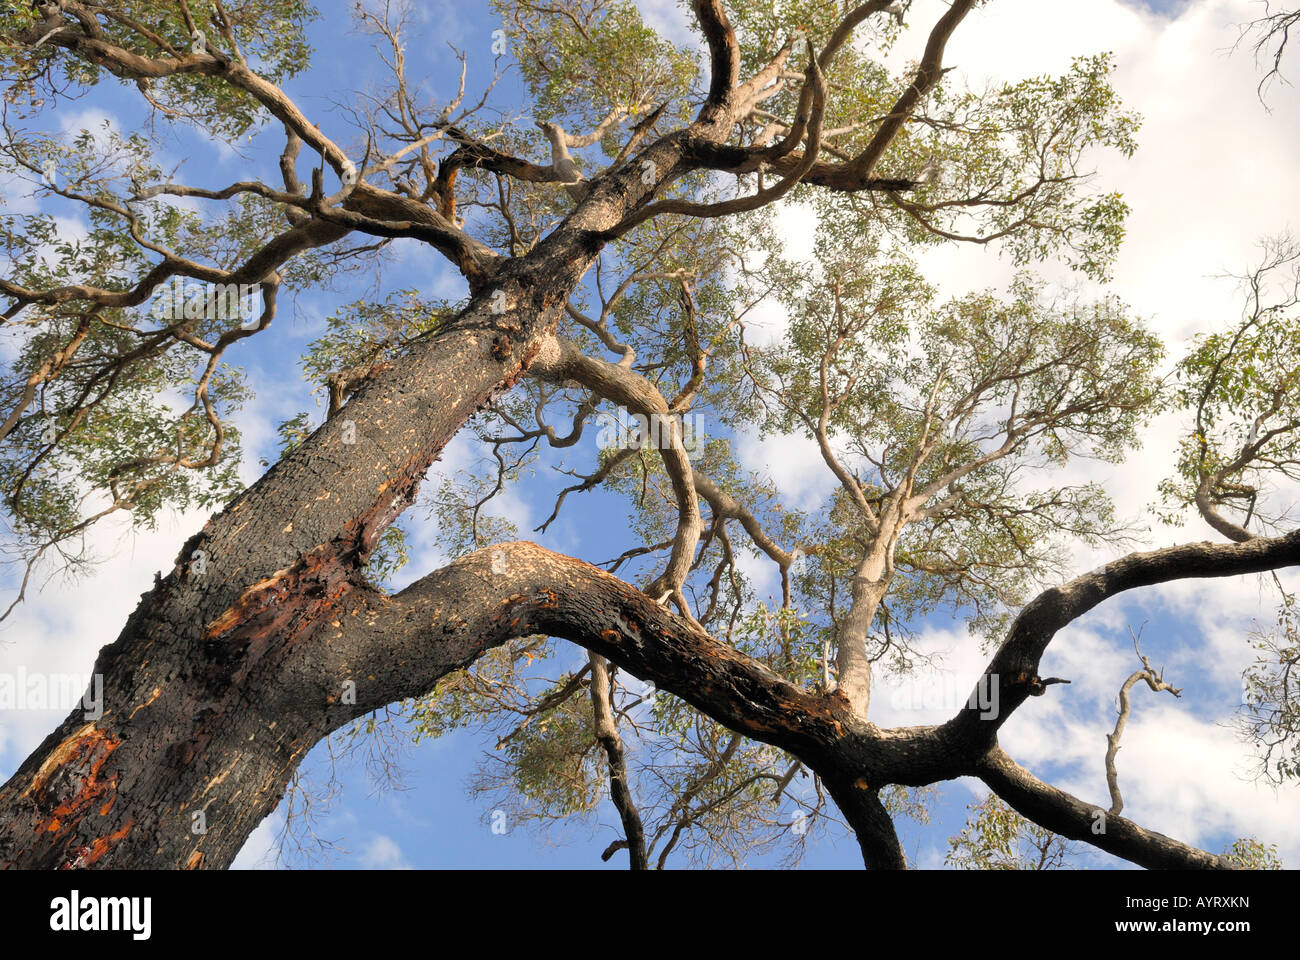 Vista del gusano de un eucalipto - o gum tree, que ha producido la resina, Ambergate Reserva, Busselton, Australia Occidental, Austra Foto de stock